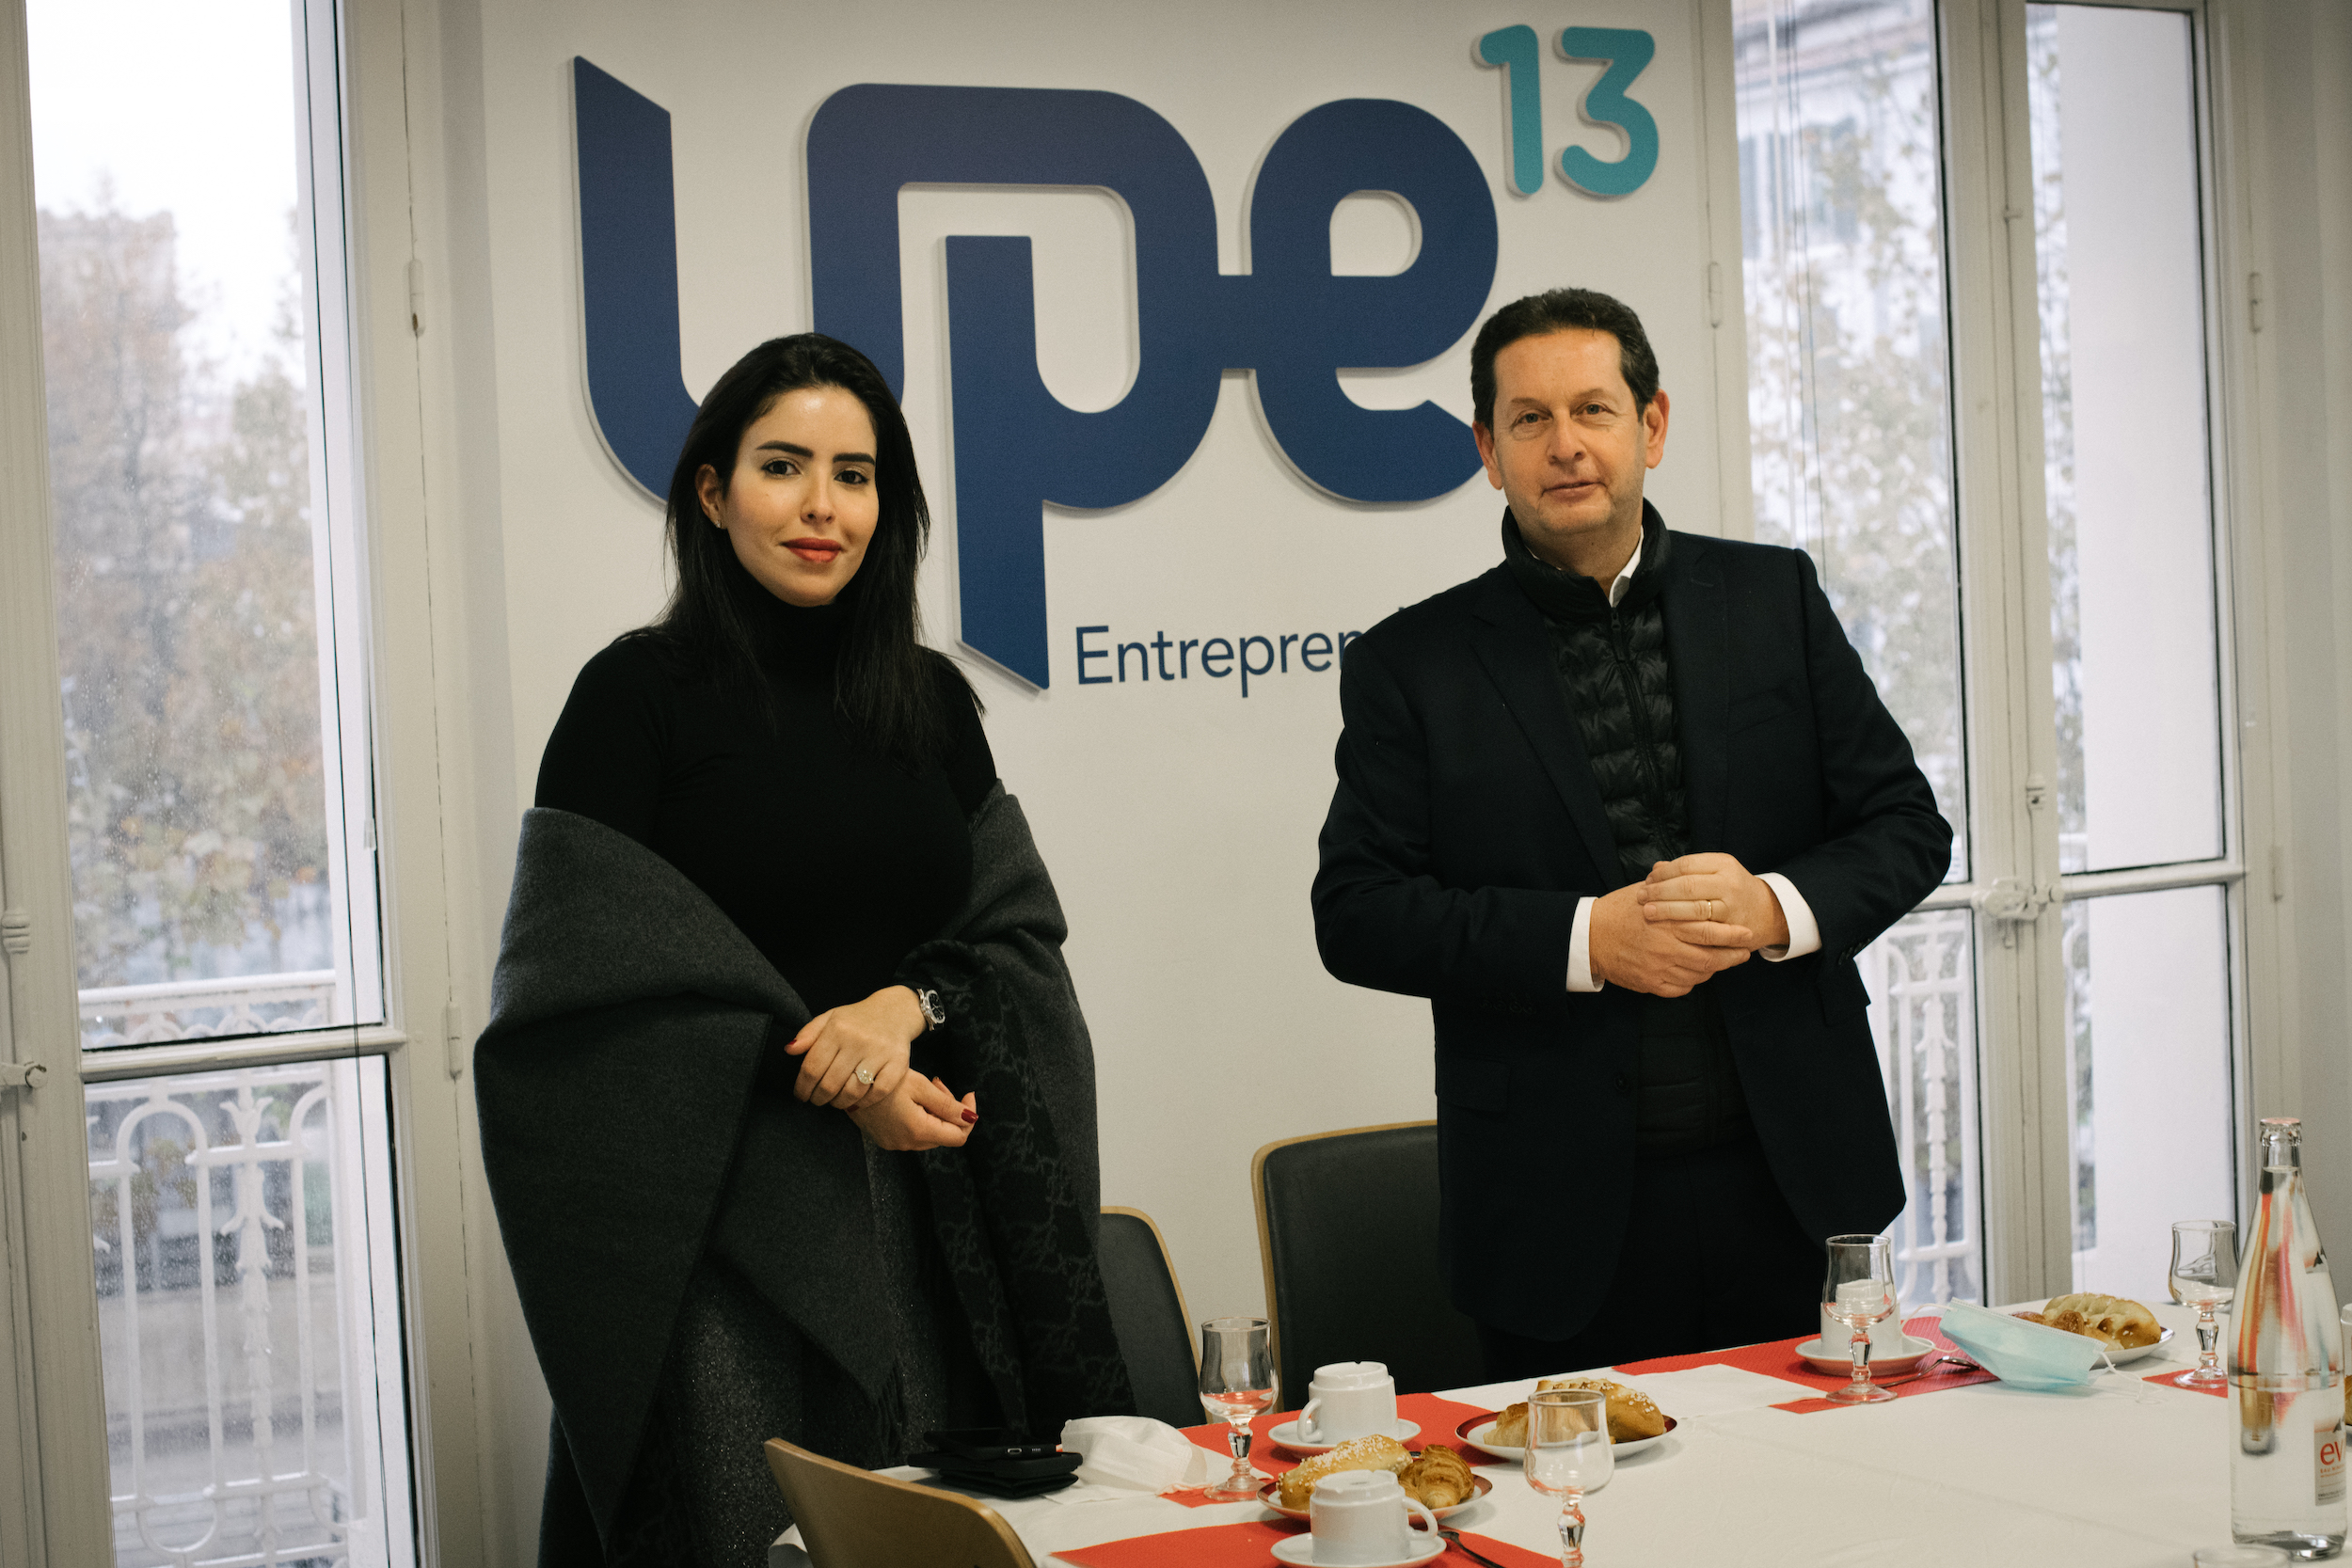 Hend Al Otaiba, ambassadrice des Émirats arabes unis en France, et Philippe Korcia, président de l'Upe 13